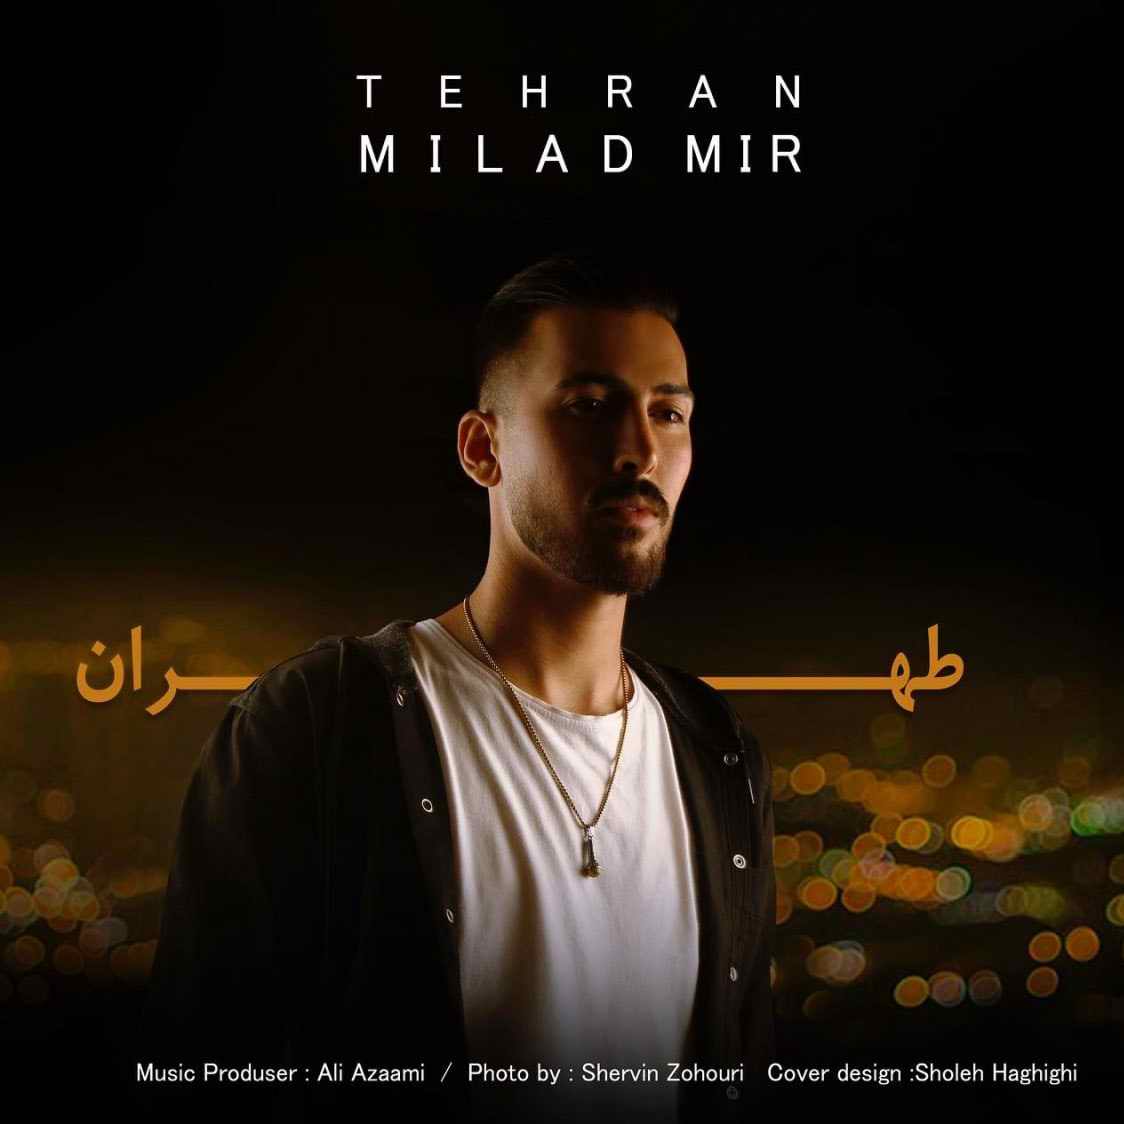 دانلود آهنگ جدید میلاد میر بنام طهران